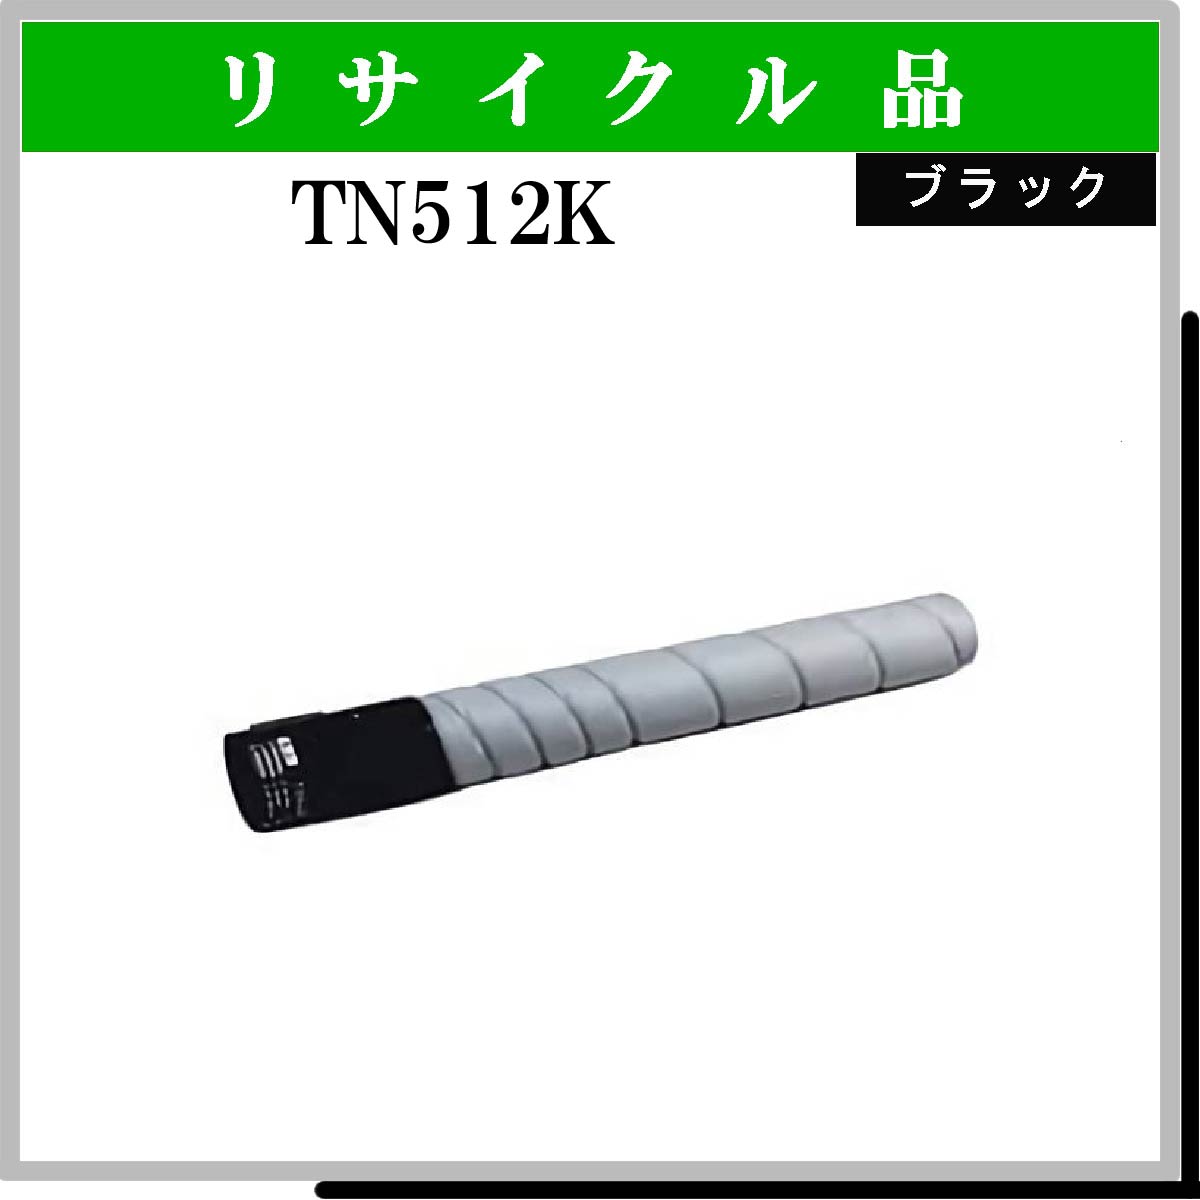 TN512K